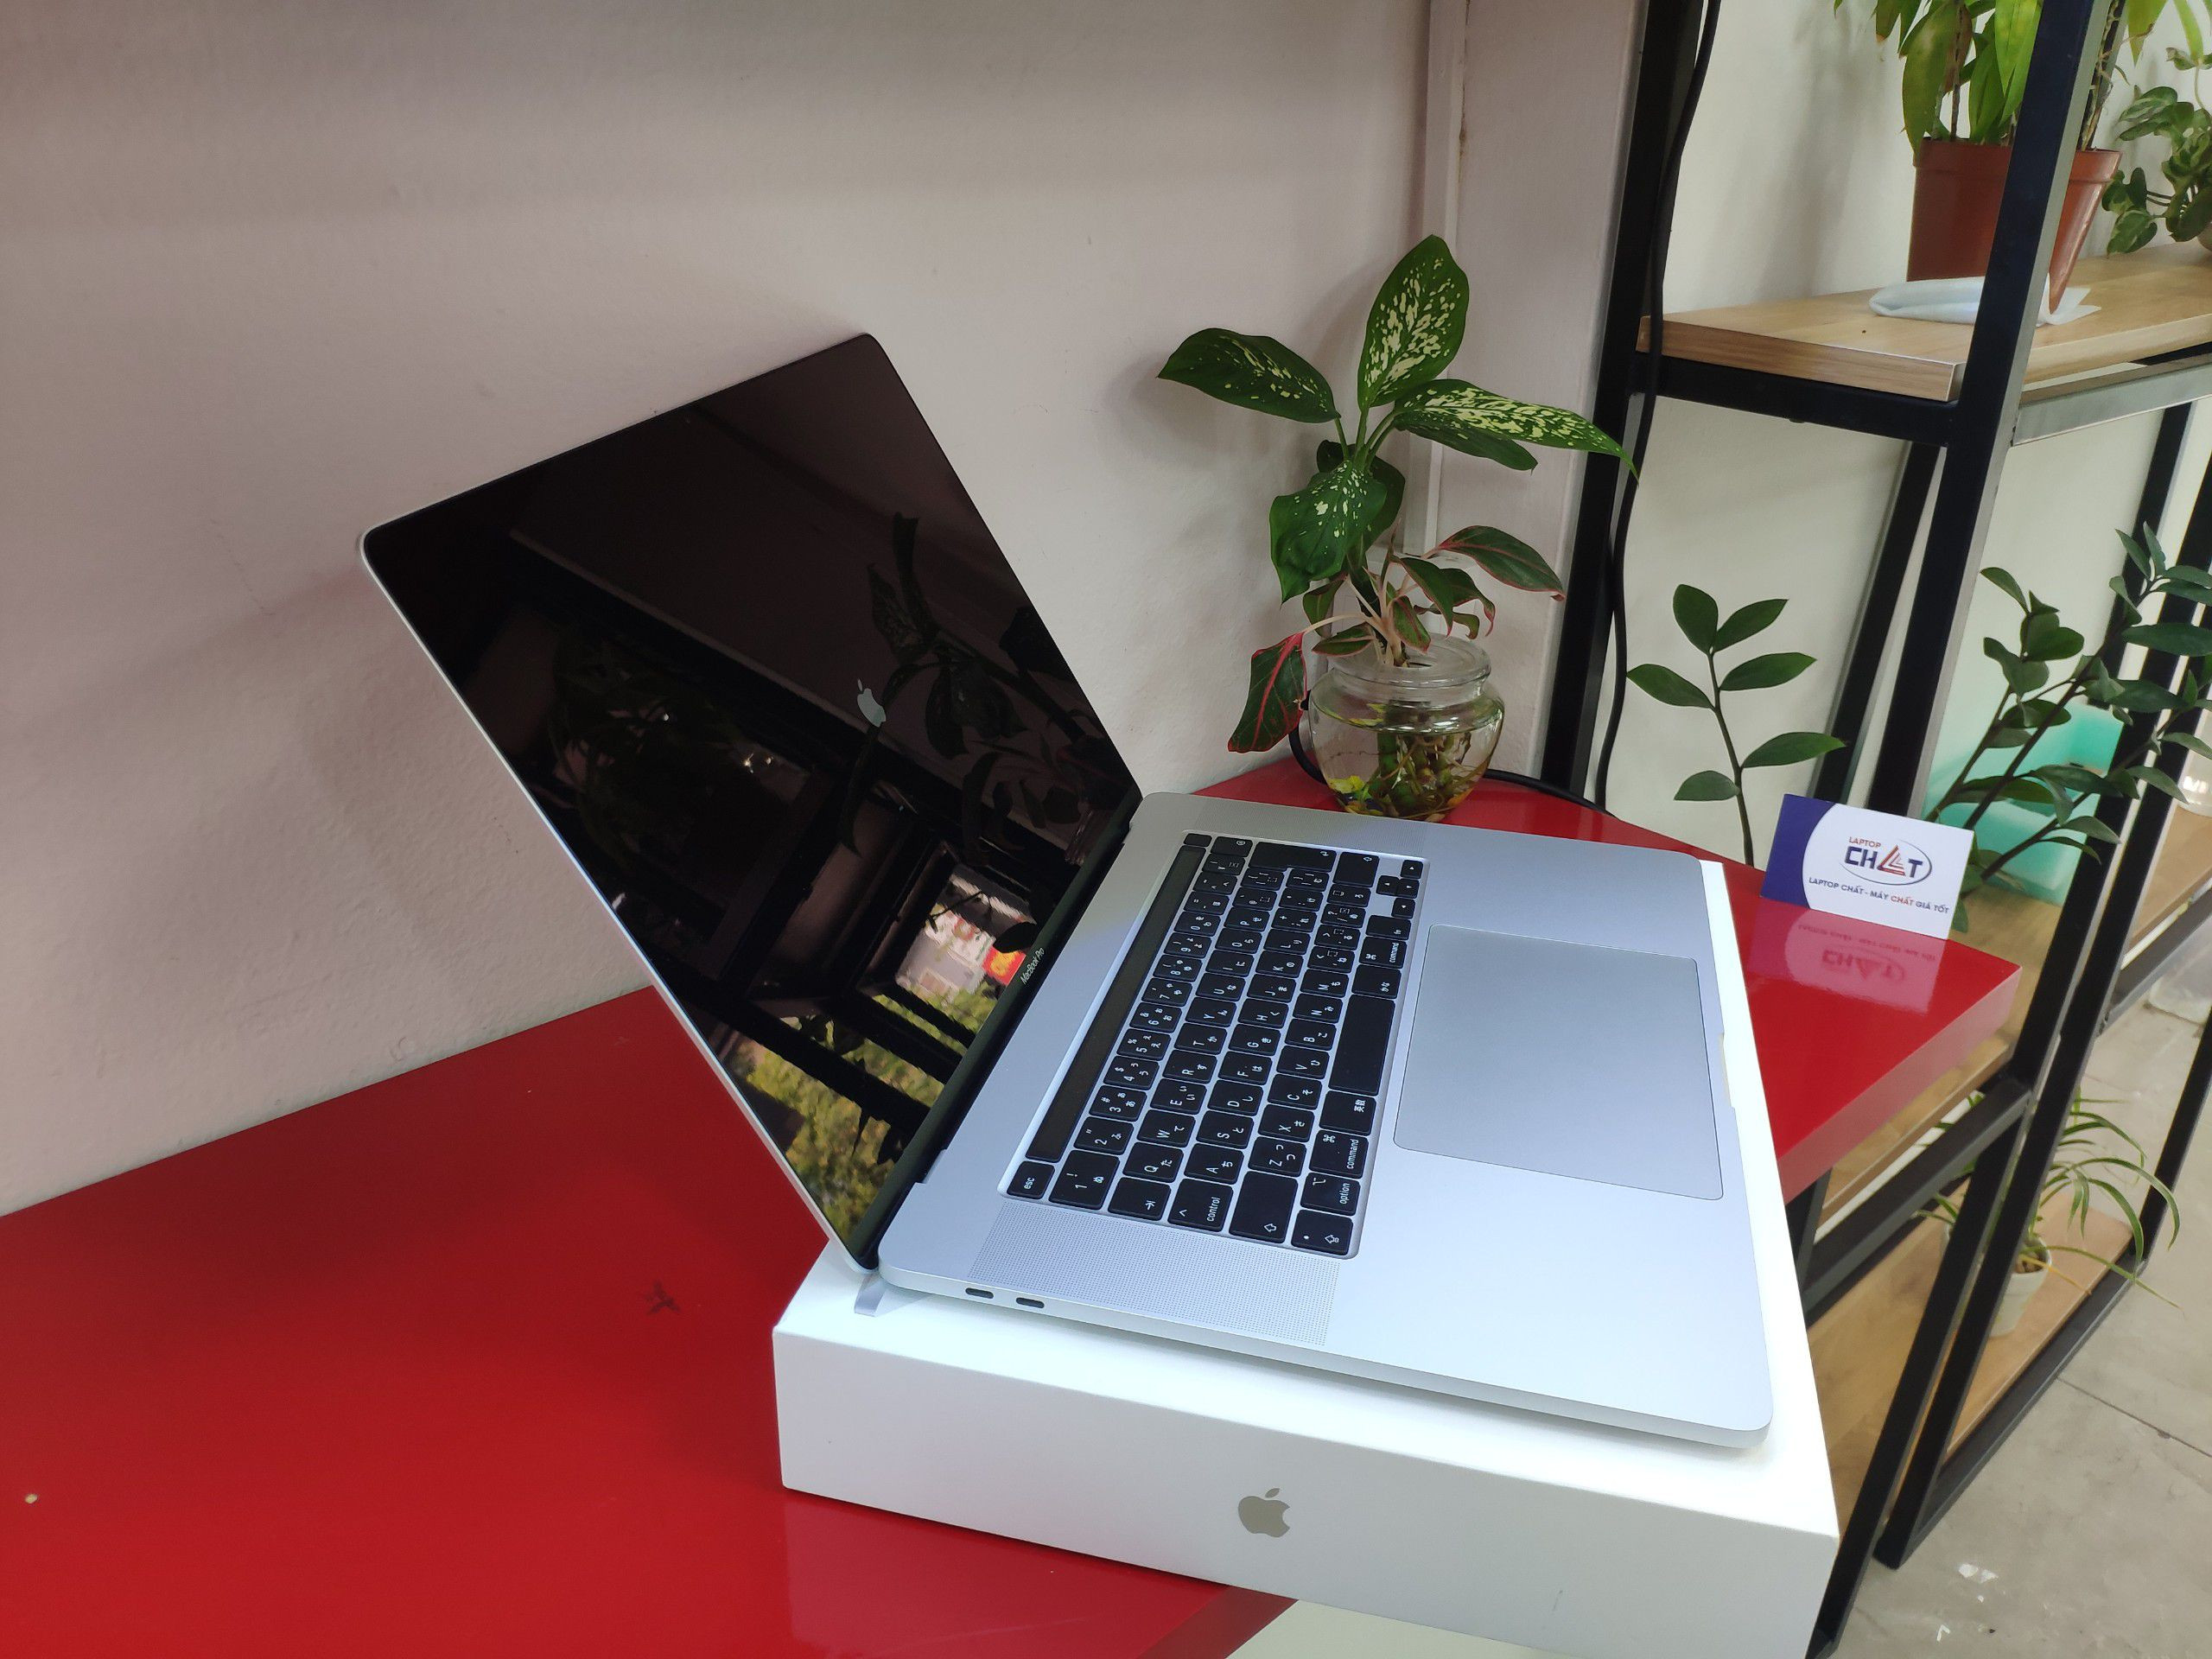 Macbook Pro 16 inch 2019-1